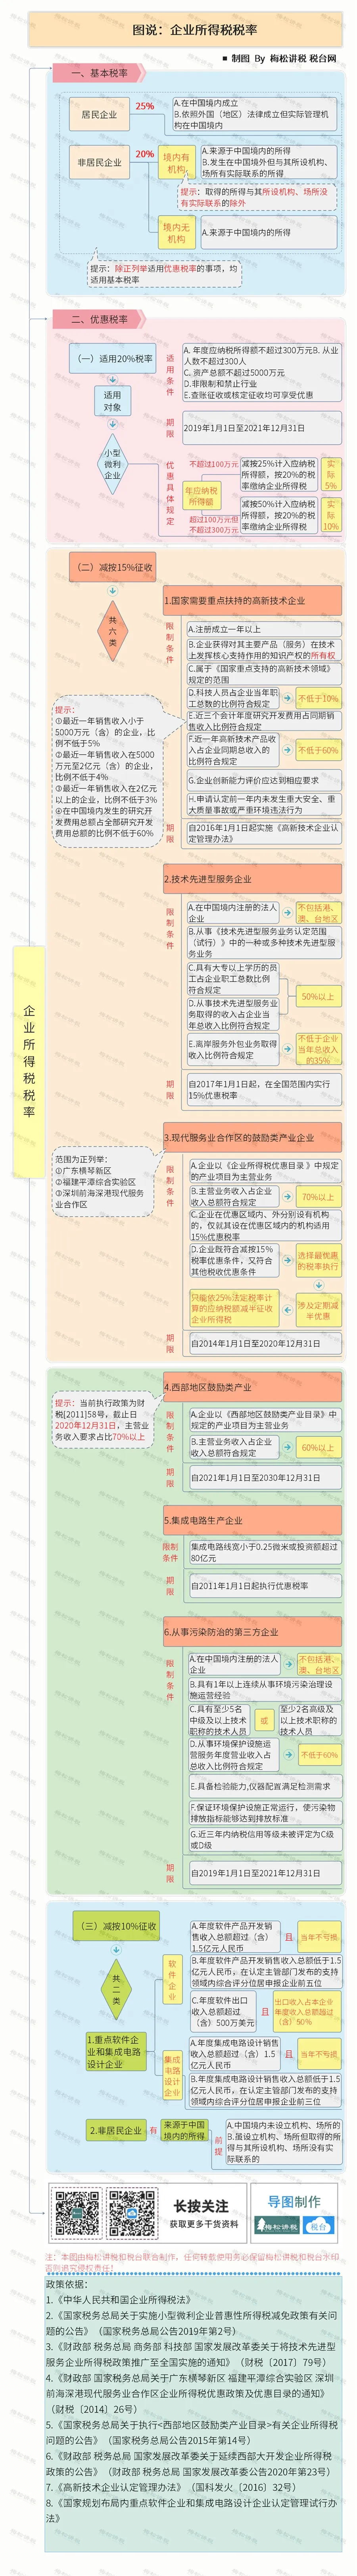 640 (1)_看图王.web(1).jpg